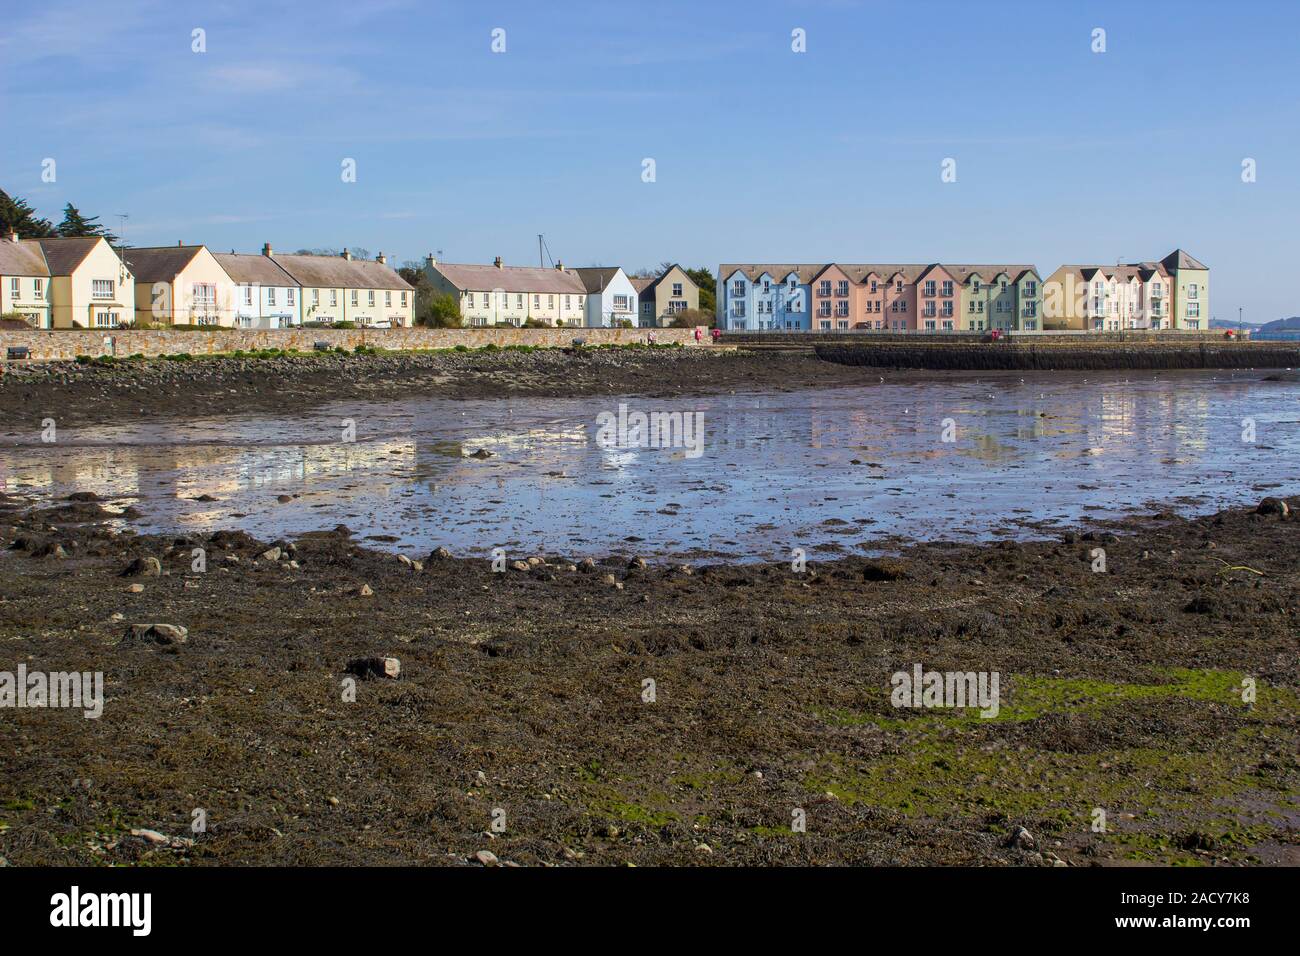 28 mars 2019 La mer mur à bord de l'eau au village Killyleagh Castle dans le comté de Down en Irlande du Nord sur le Strangford Lough, à marée basse. Le Lough est famo Banque D'Images